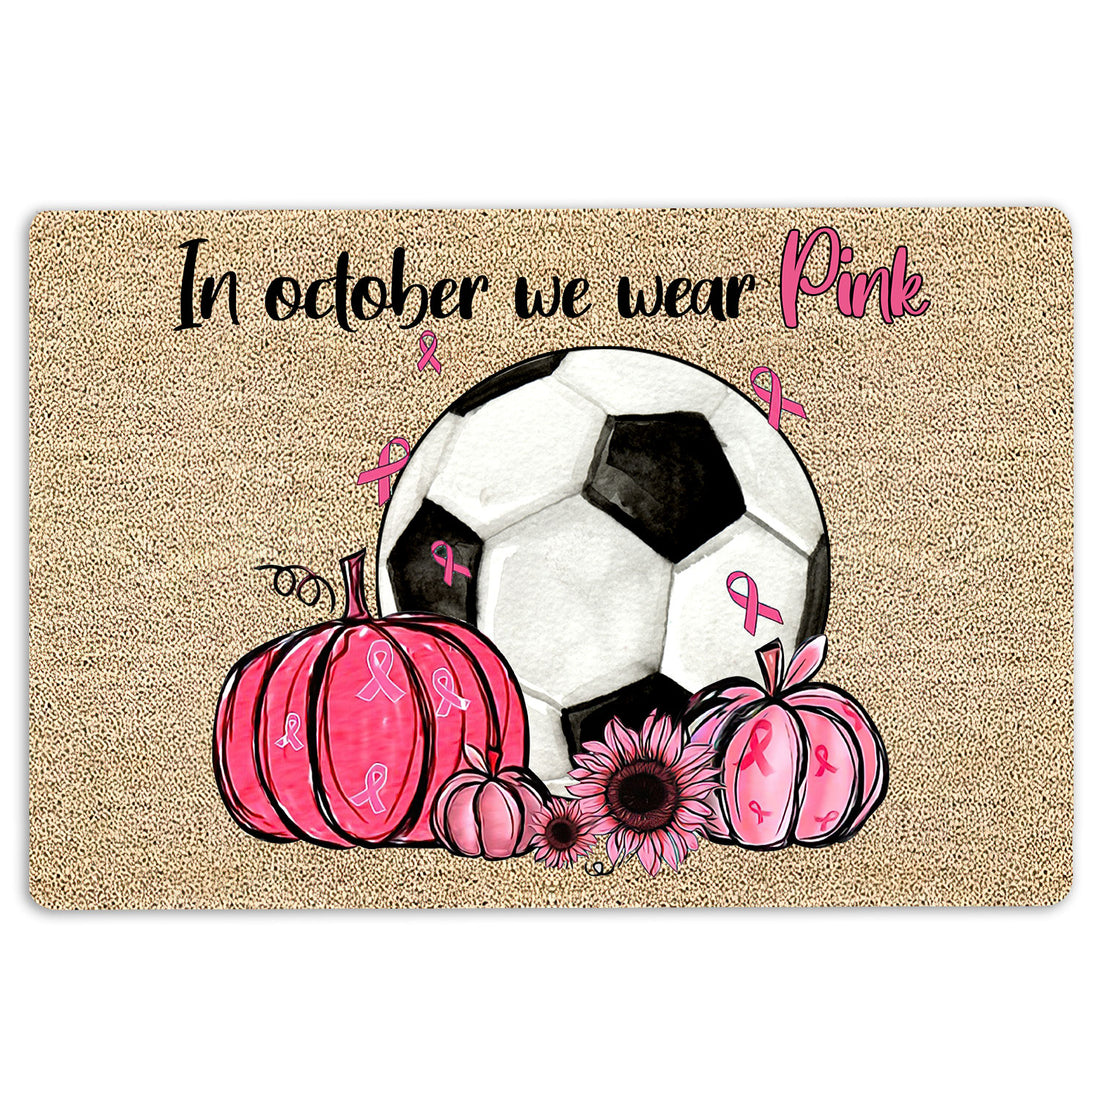 Ohaprints-Doormat-Outdoor-Indoor-Breast-Cancer-Soccer-In-October-We-Wear-Pink-Rubber-Door-Mat-1915-18'' x 30''